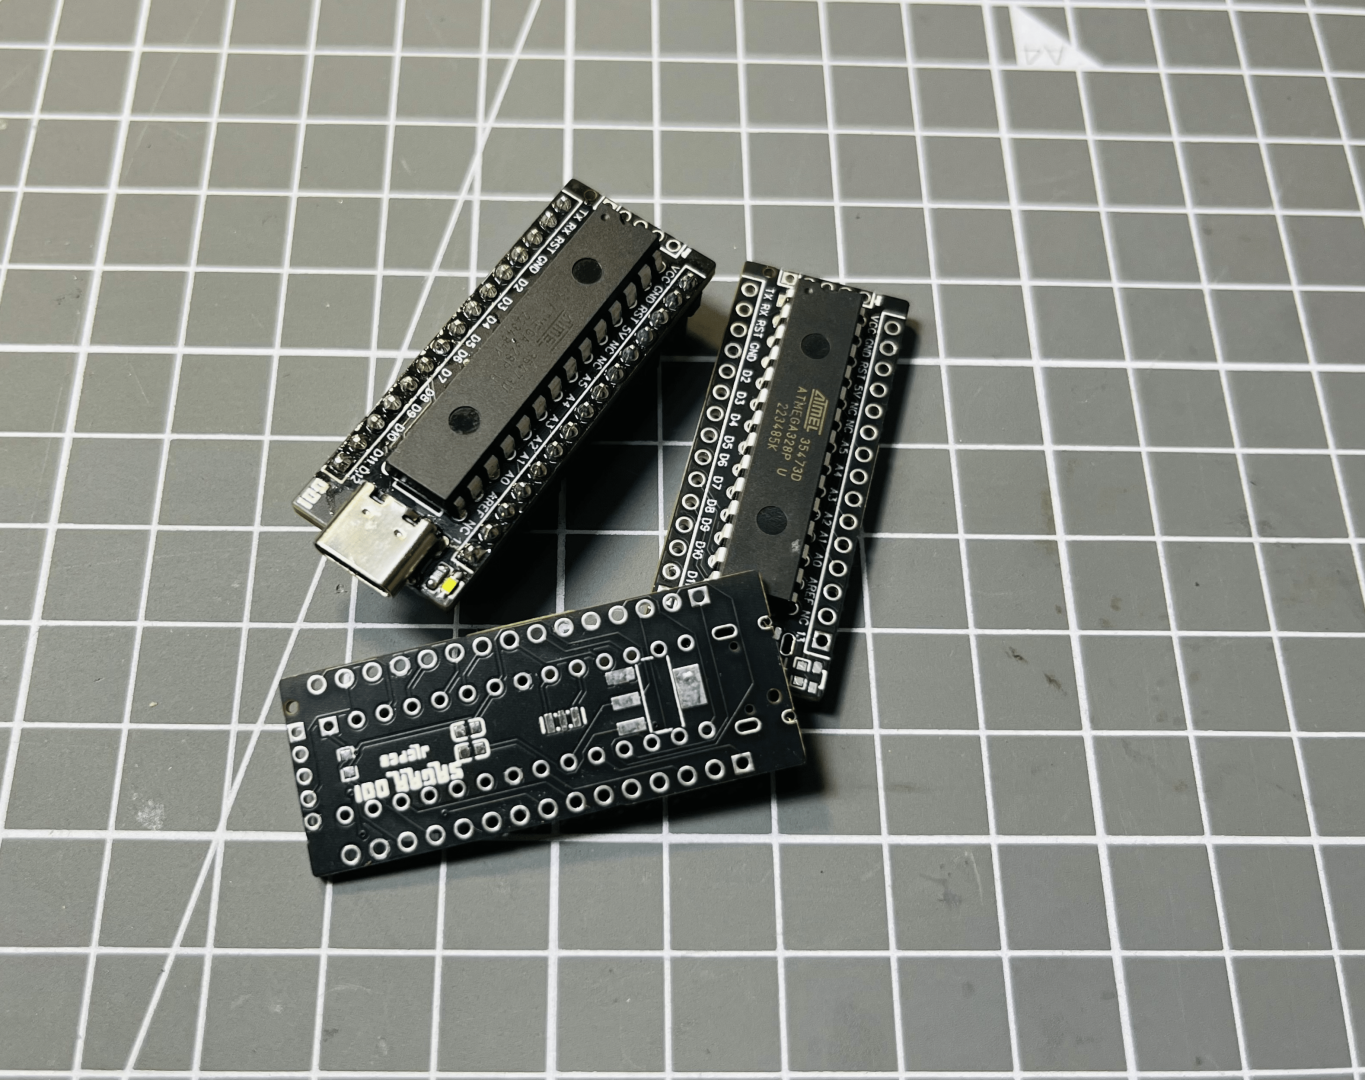 My Minimal Arduino Nano Board